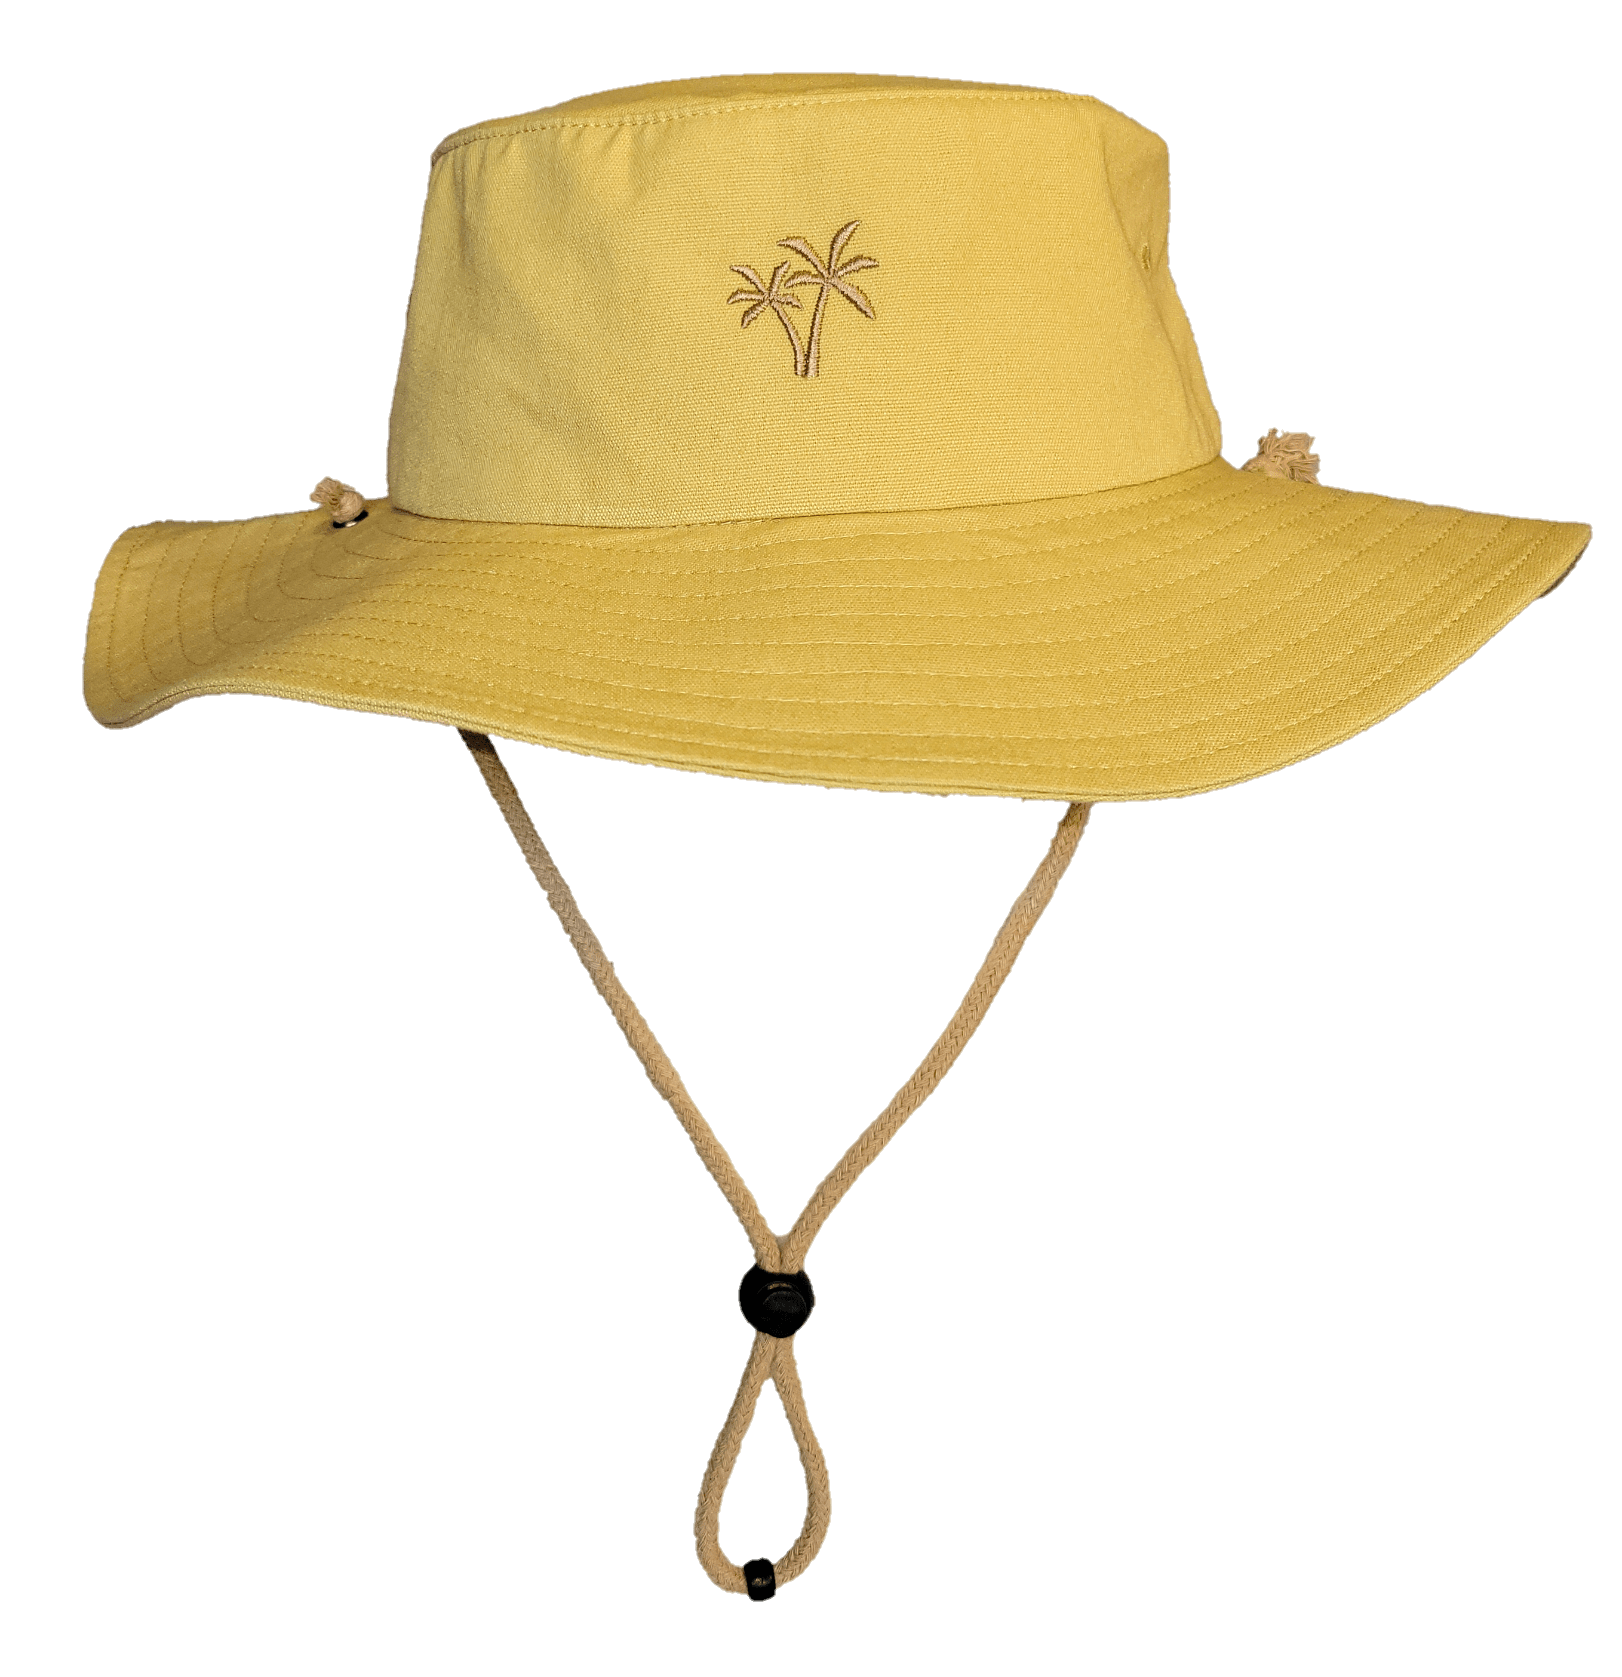 Original Topic Shade Beach Hat in Tan